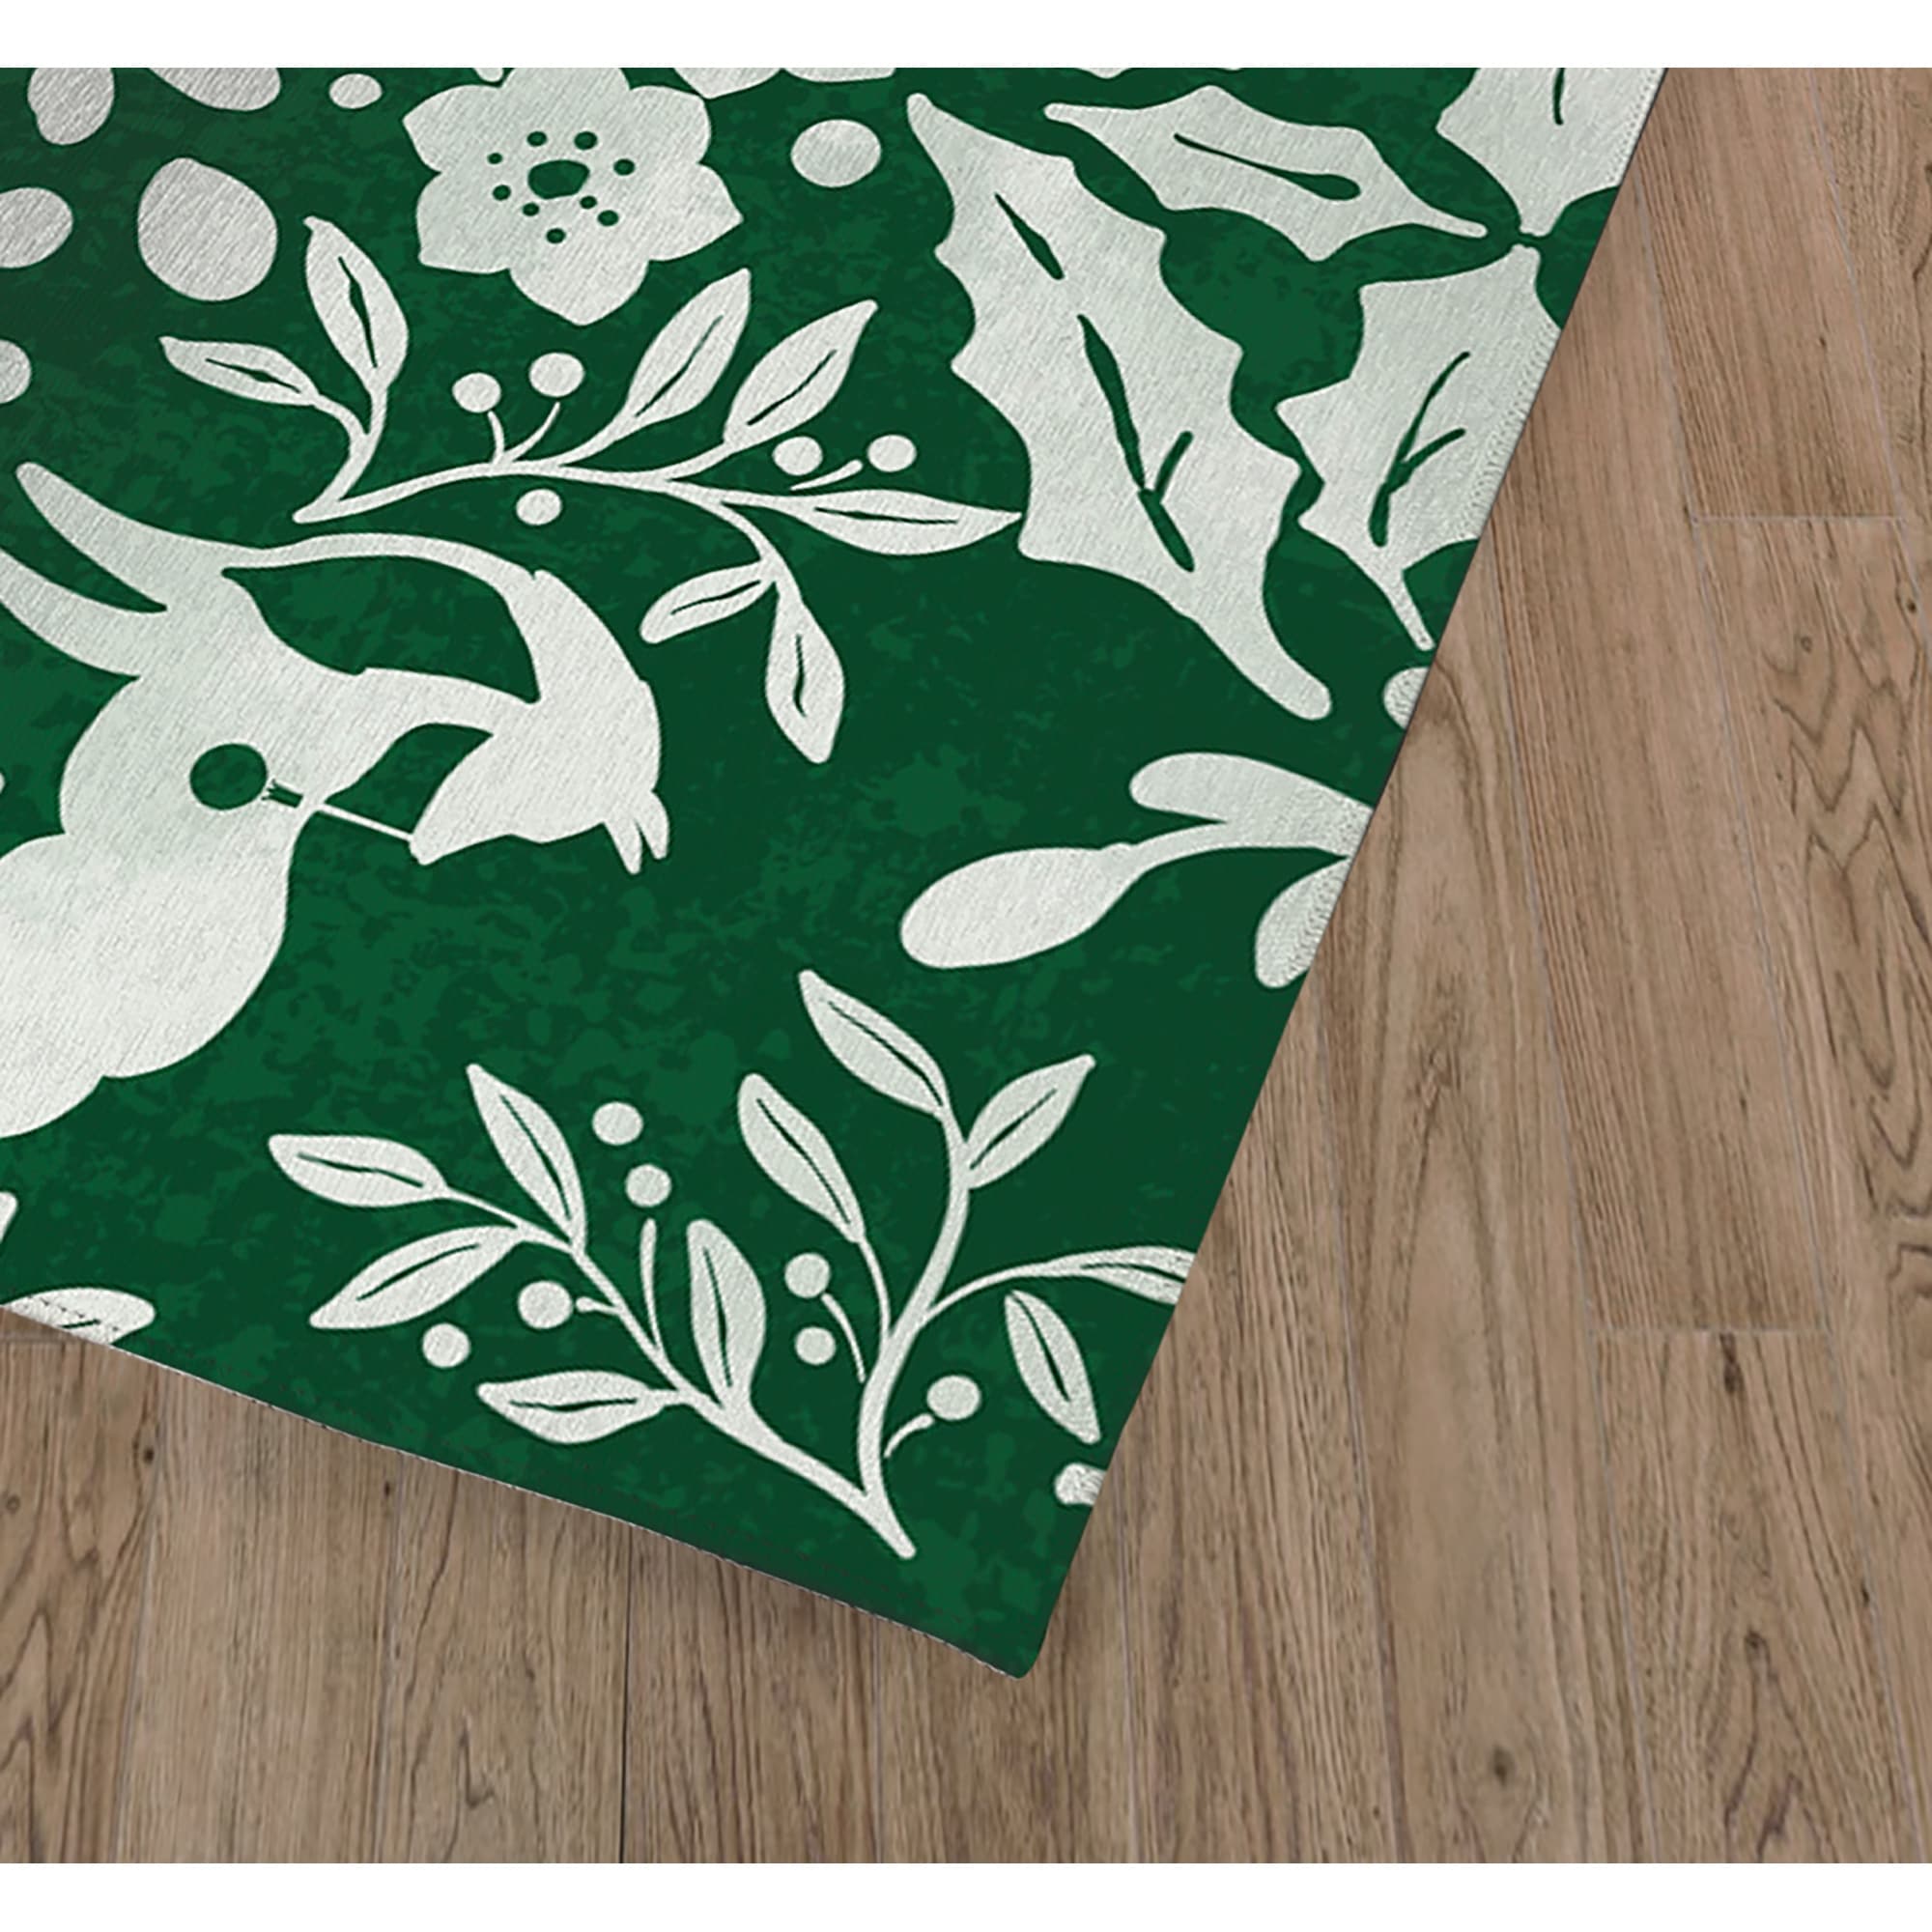 WINTER WOODS Indoor Floor Mat By Kavka Designs - Bed Bath & Beyond -  32224556